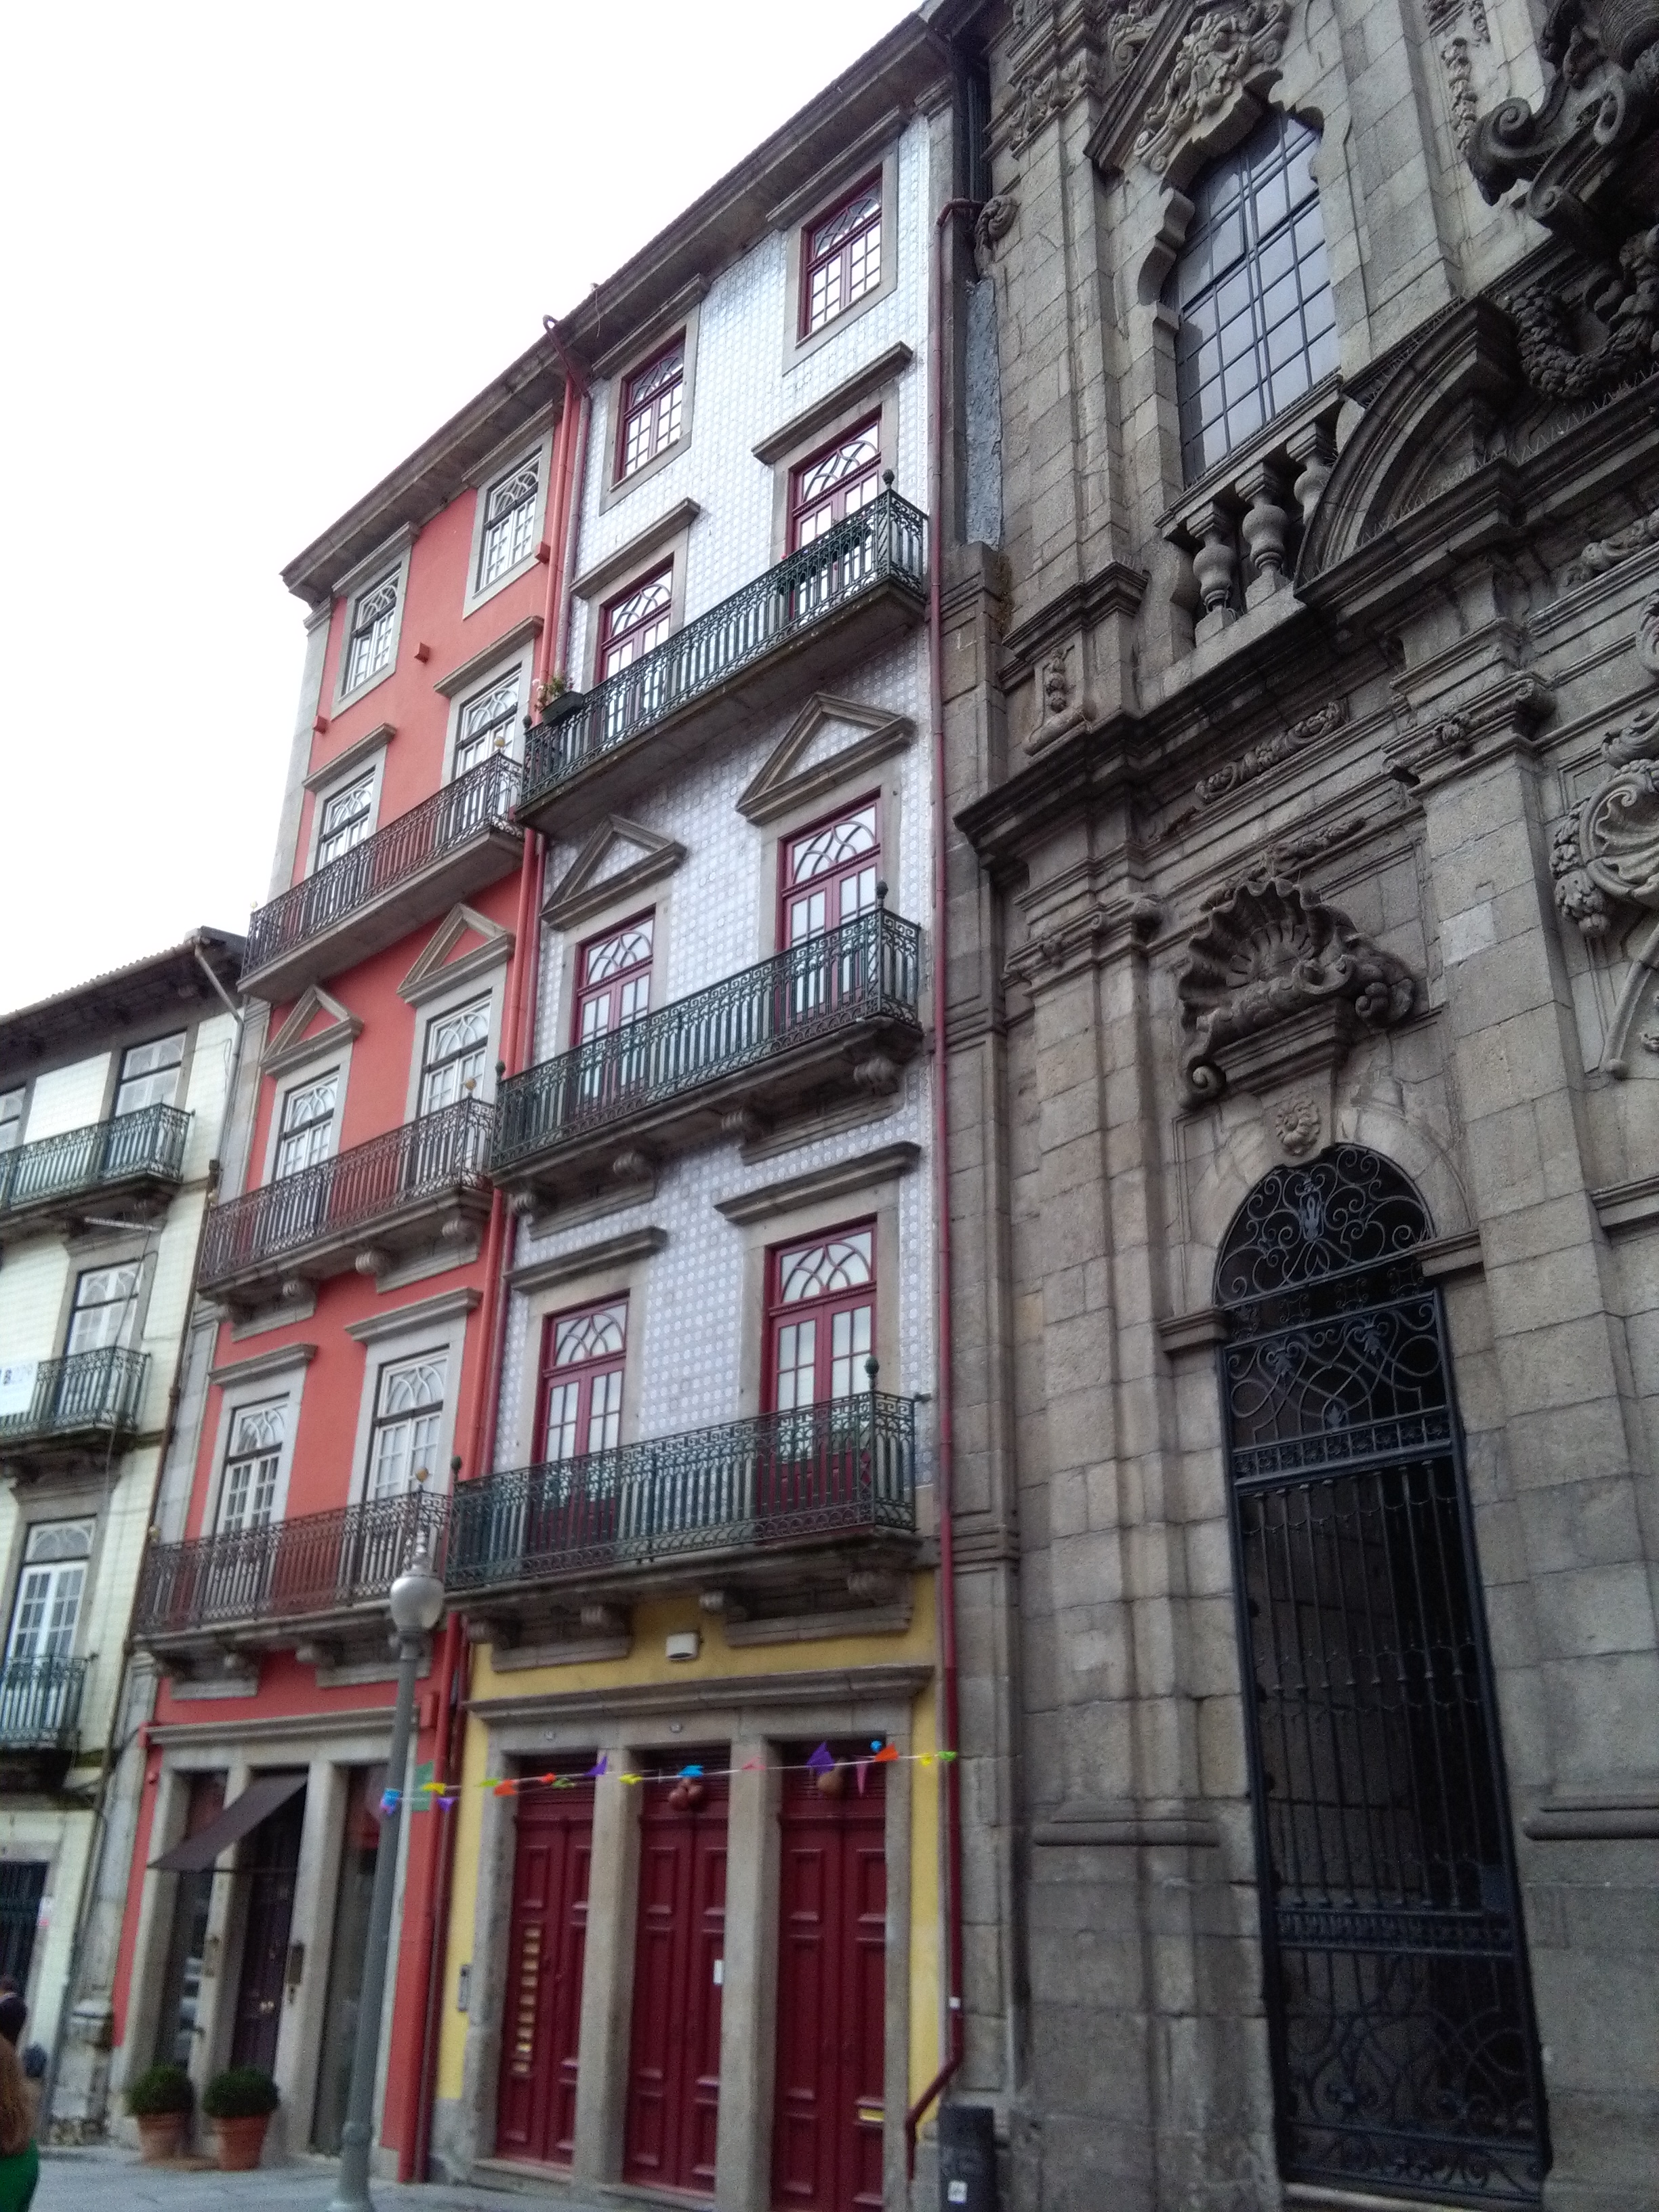 Porto stedentrip romantische bestemming 009